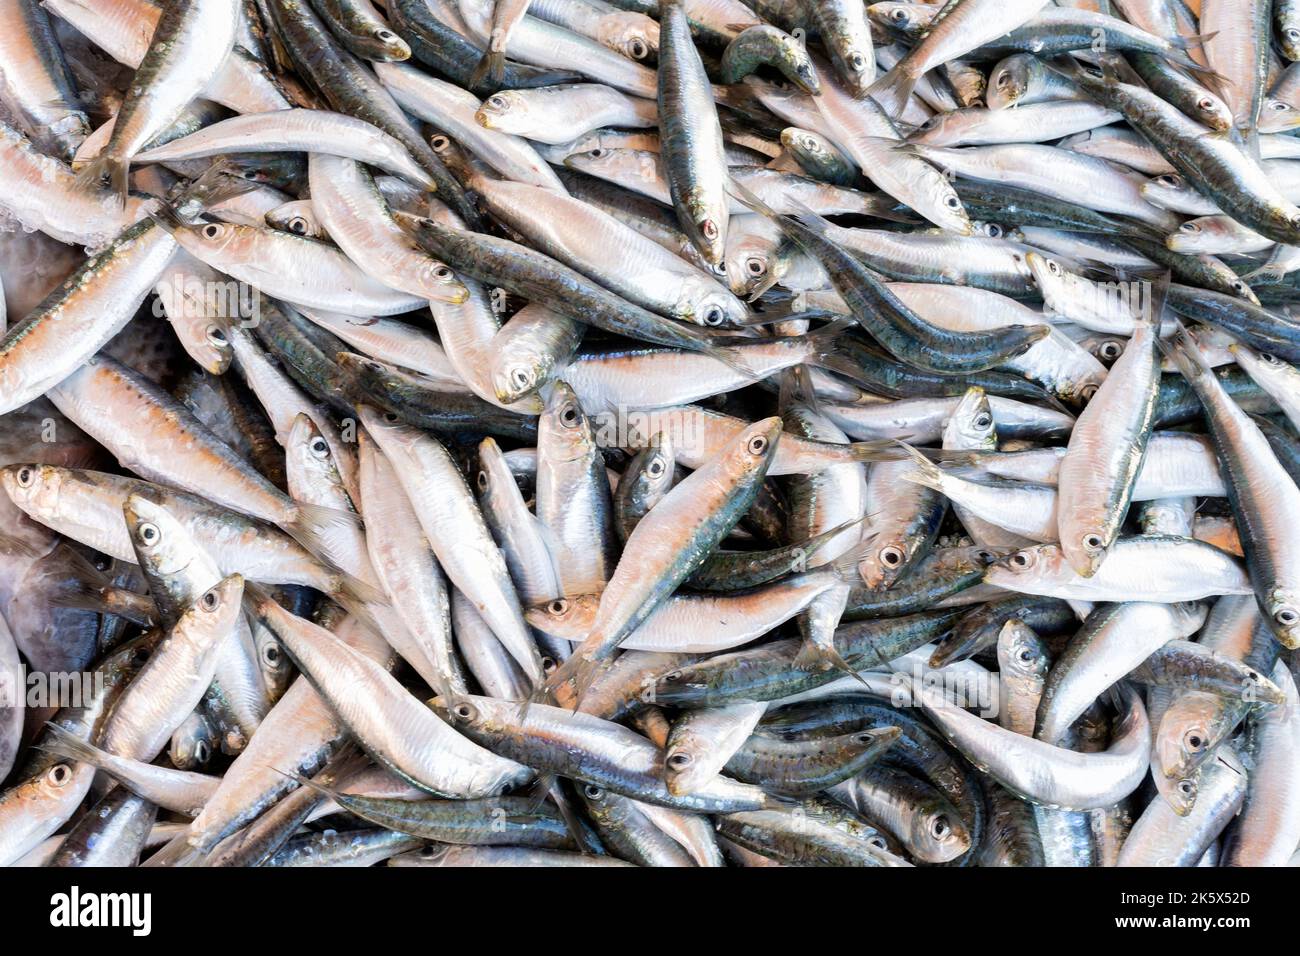 Freshly caught sardines, Sardina pilchardus, also known as European Pilchard for sale on a market stall Stock Photo